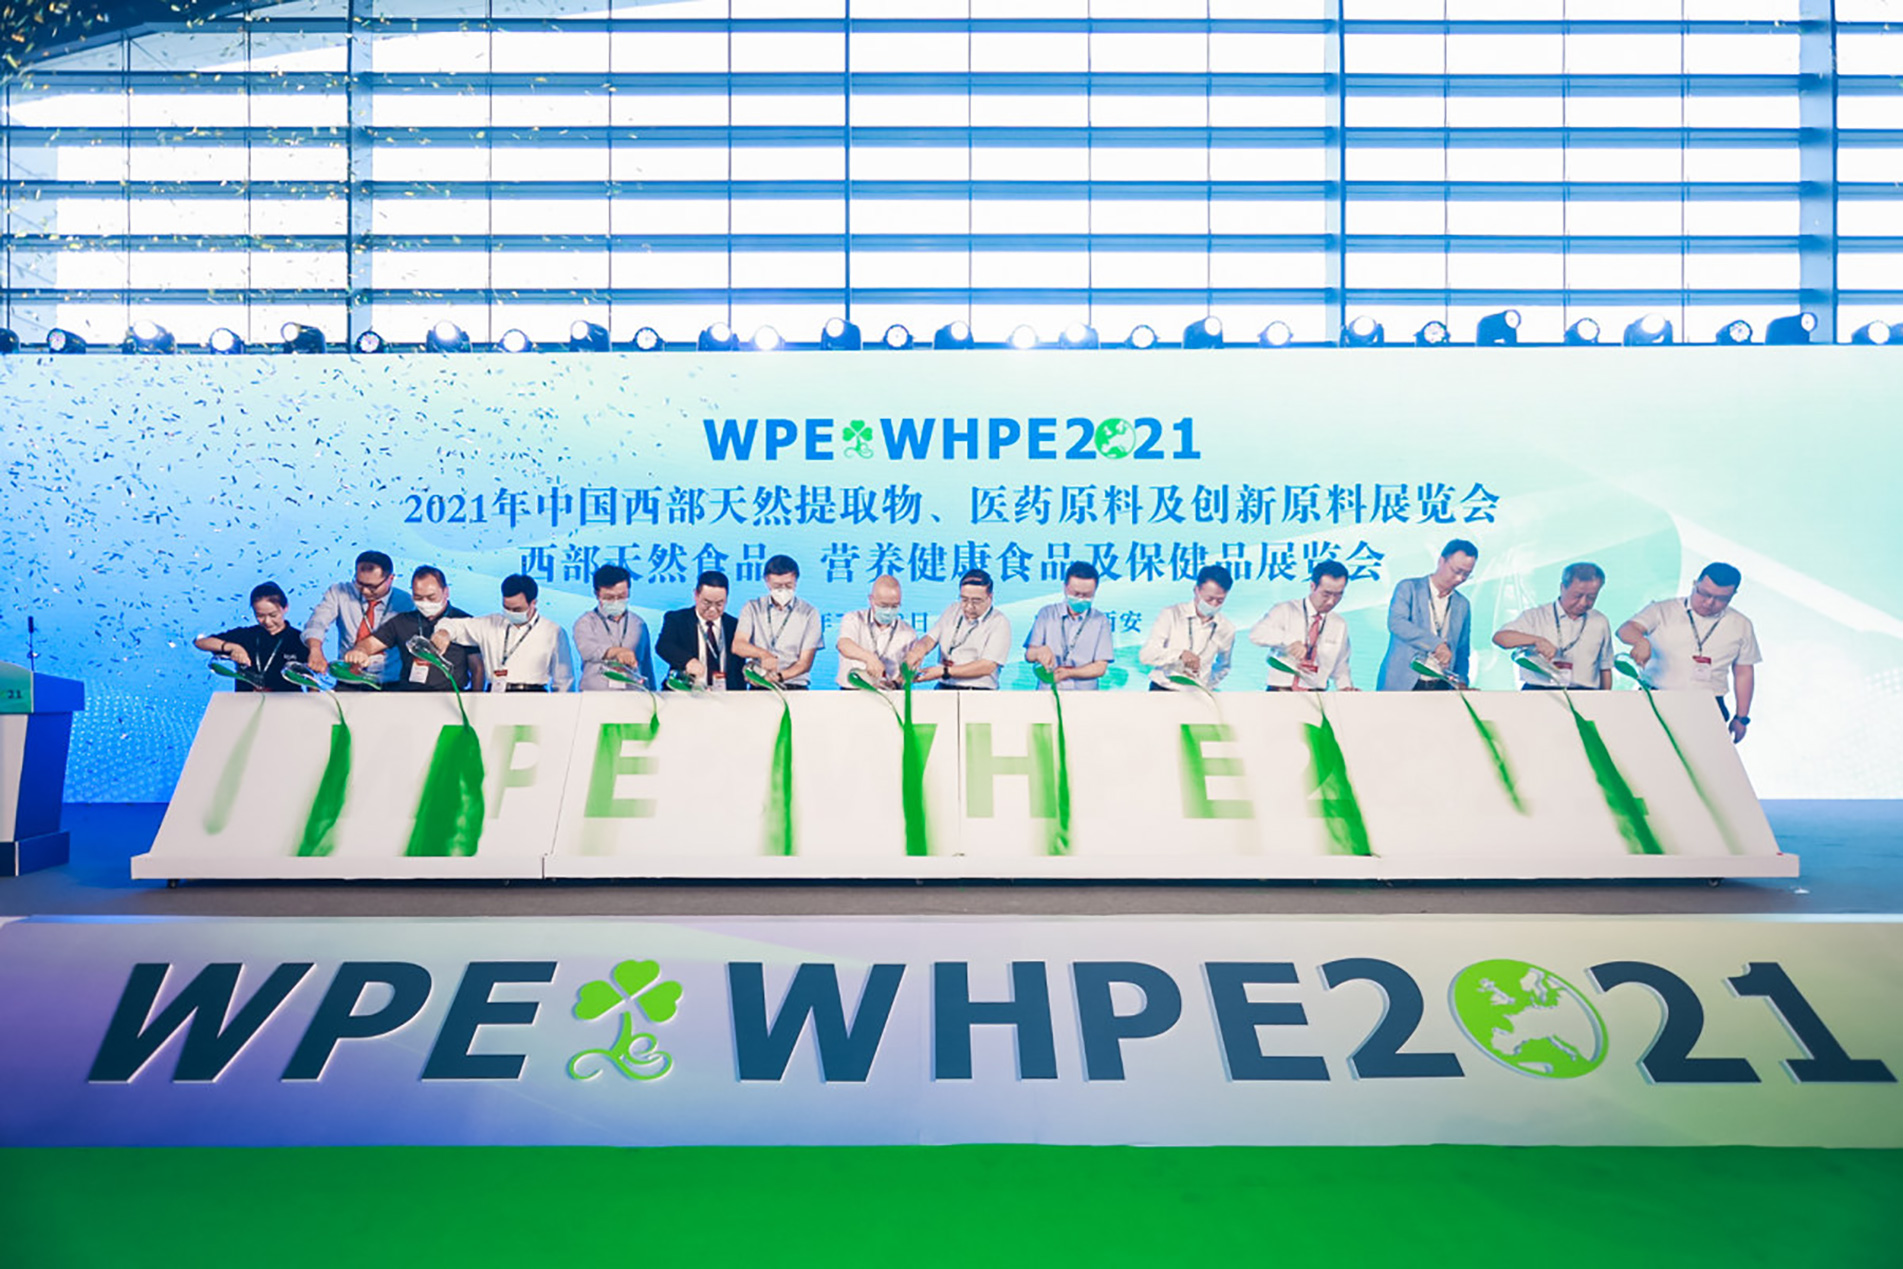 2022中国西部天然展WPE/WHPE/PE-TECH三展同期落地西安